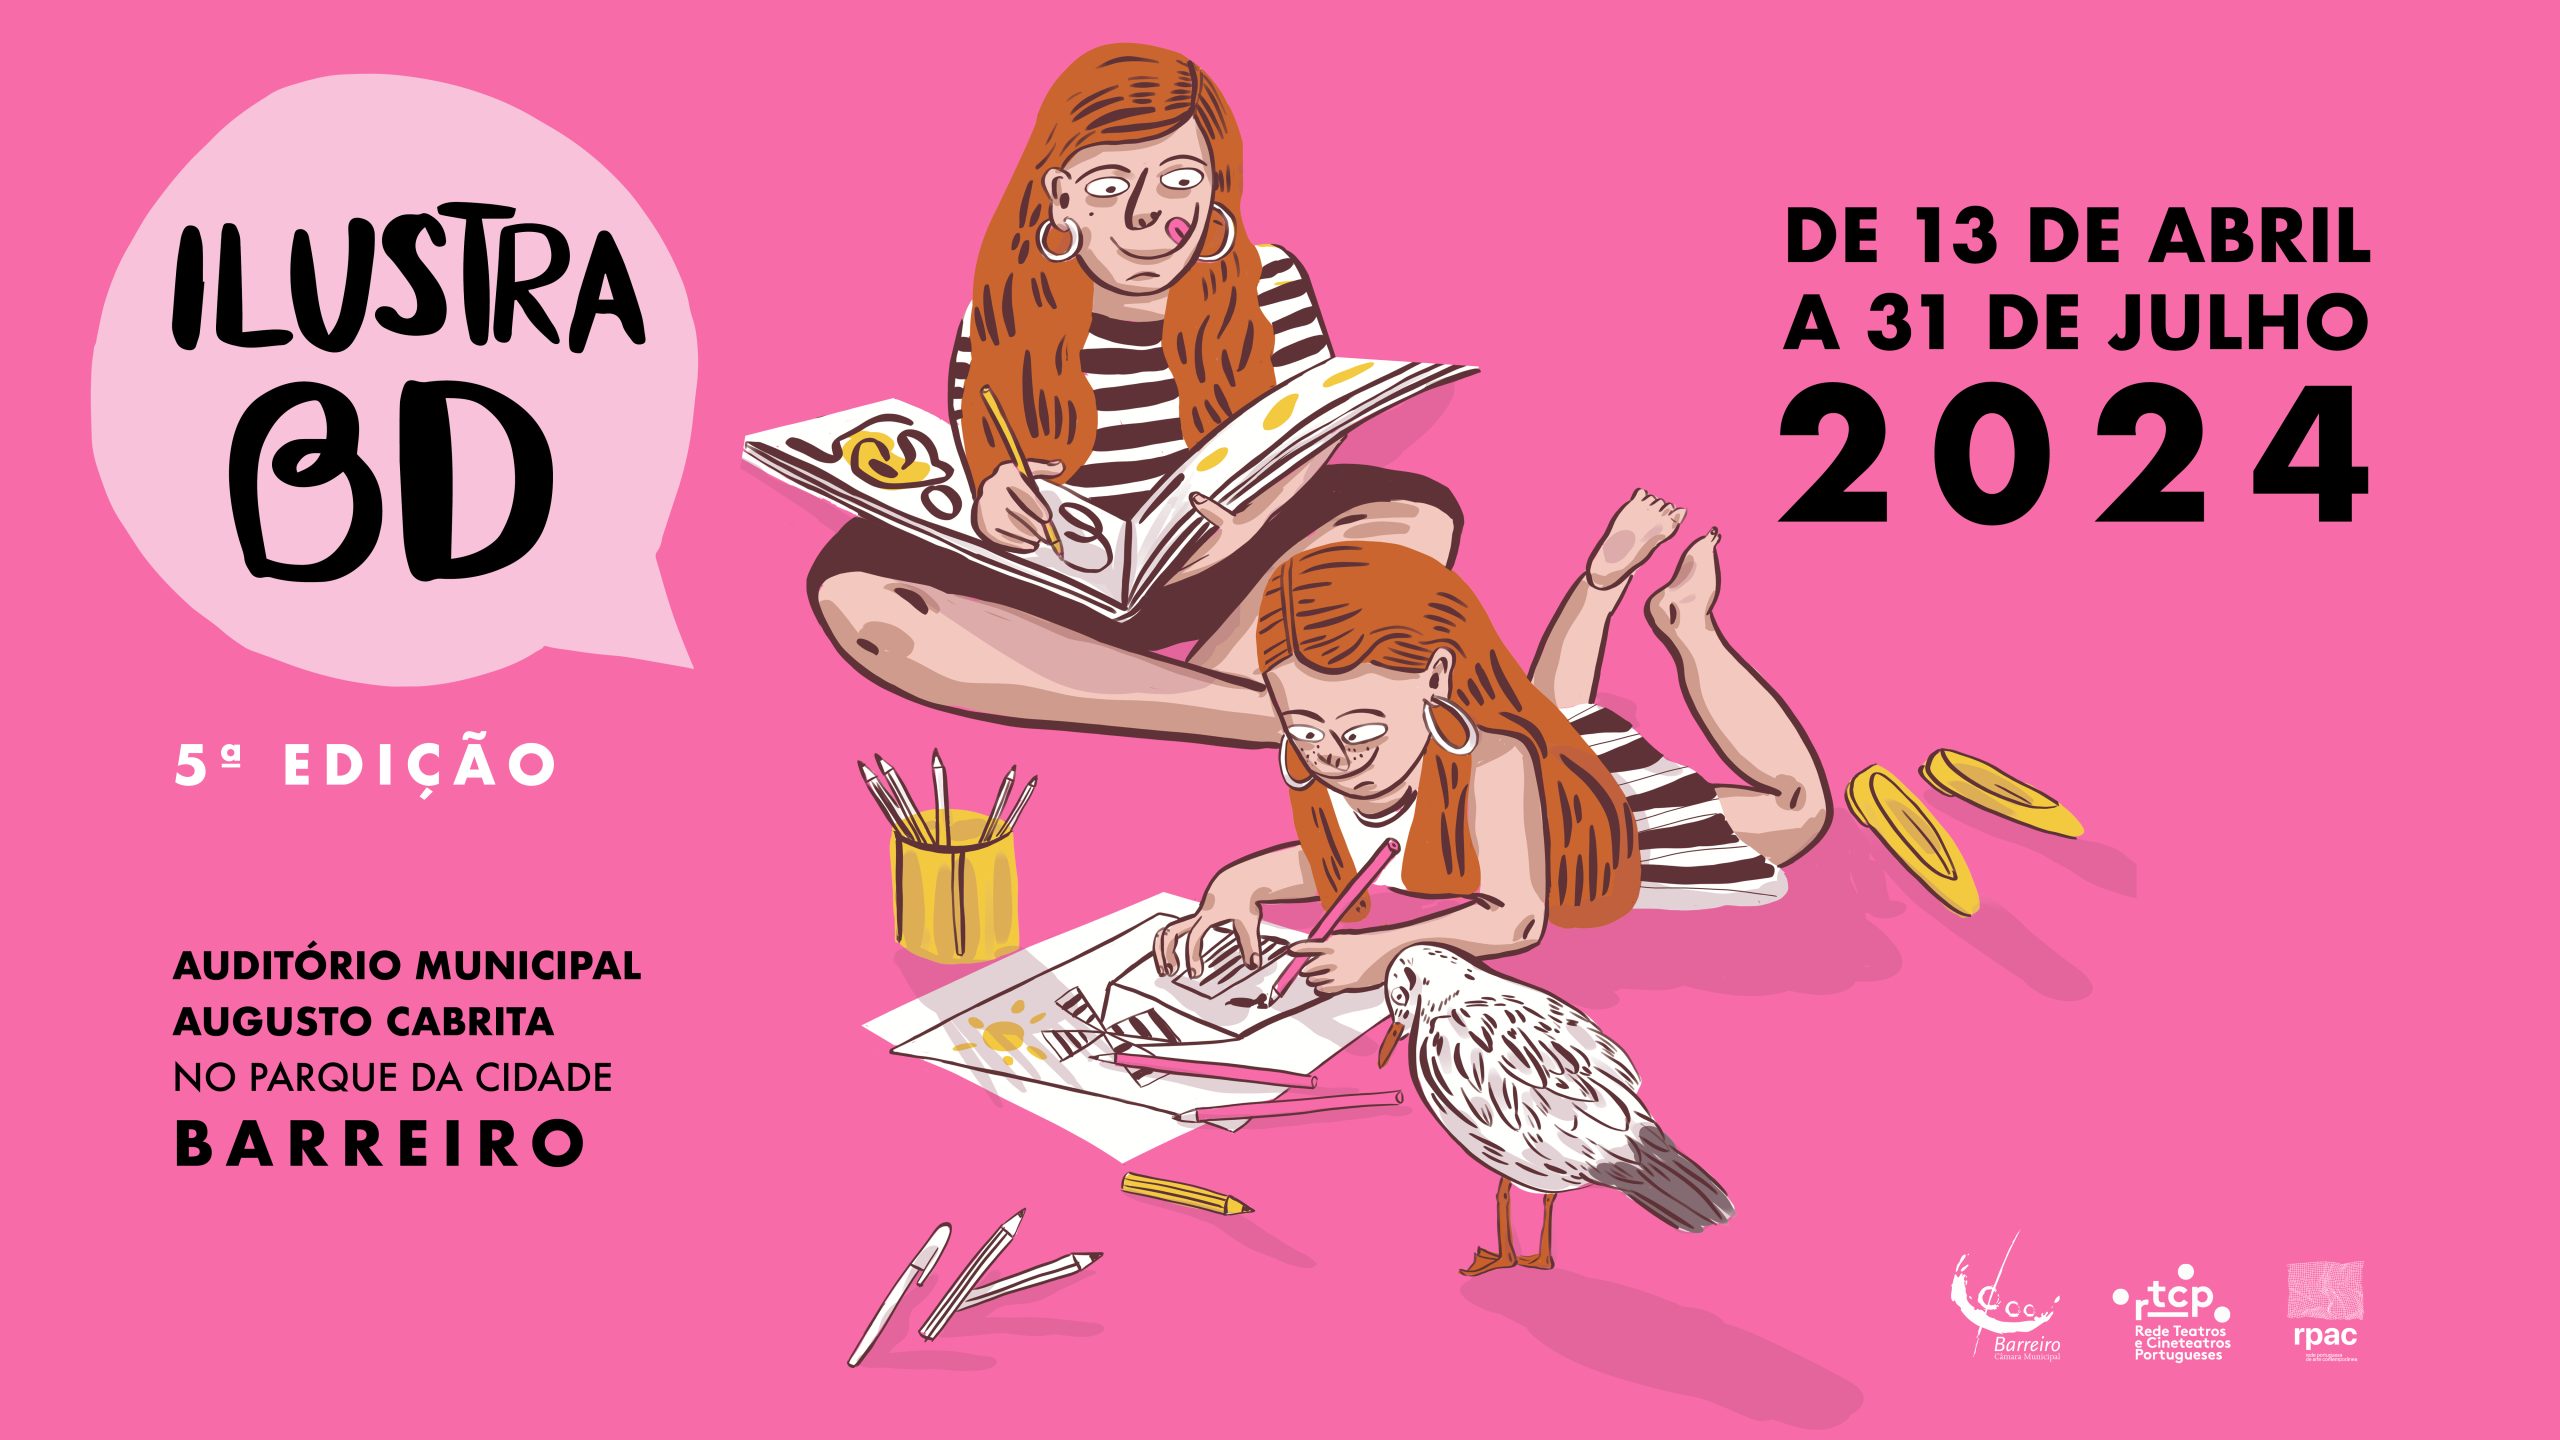 Cartaz da 5ª edição IlustraBD de 2024 no Auditório Municipal Augusto Cabrita, no Barreiro